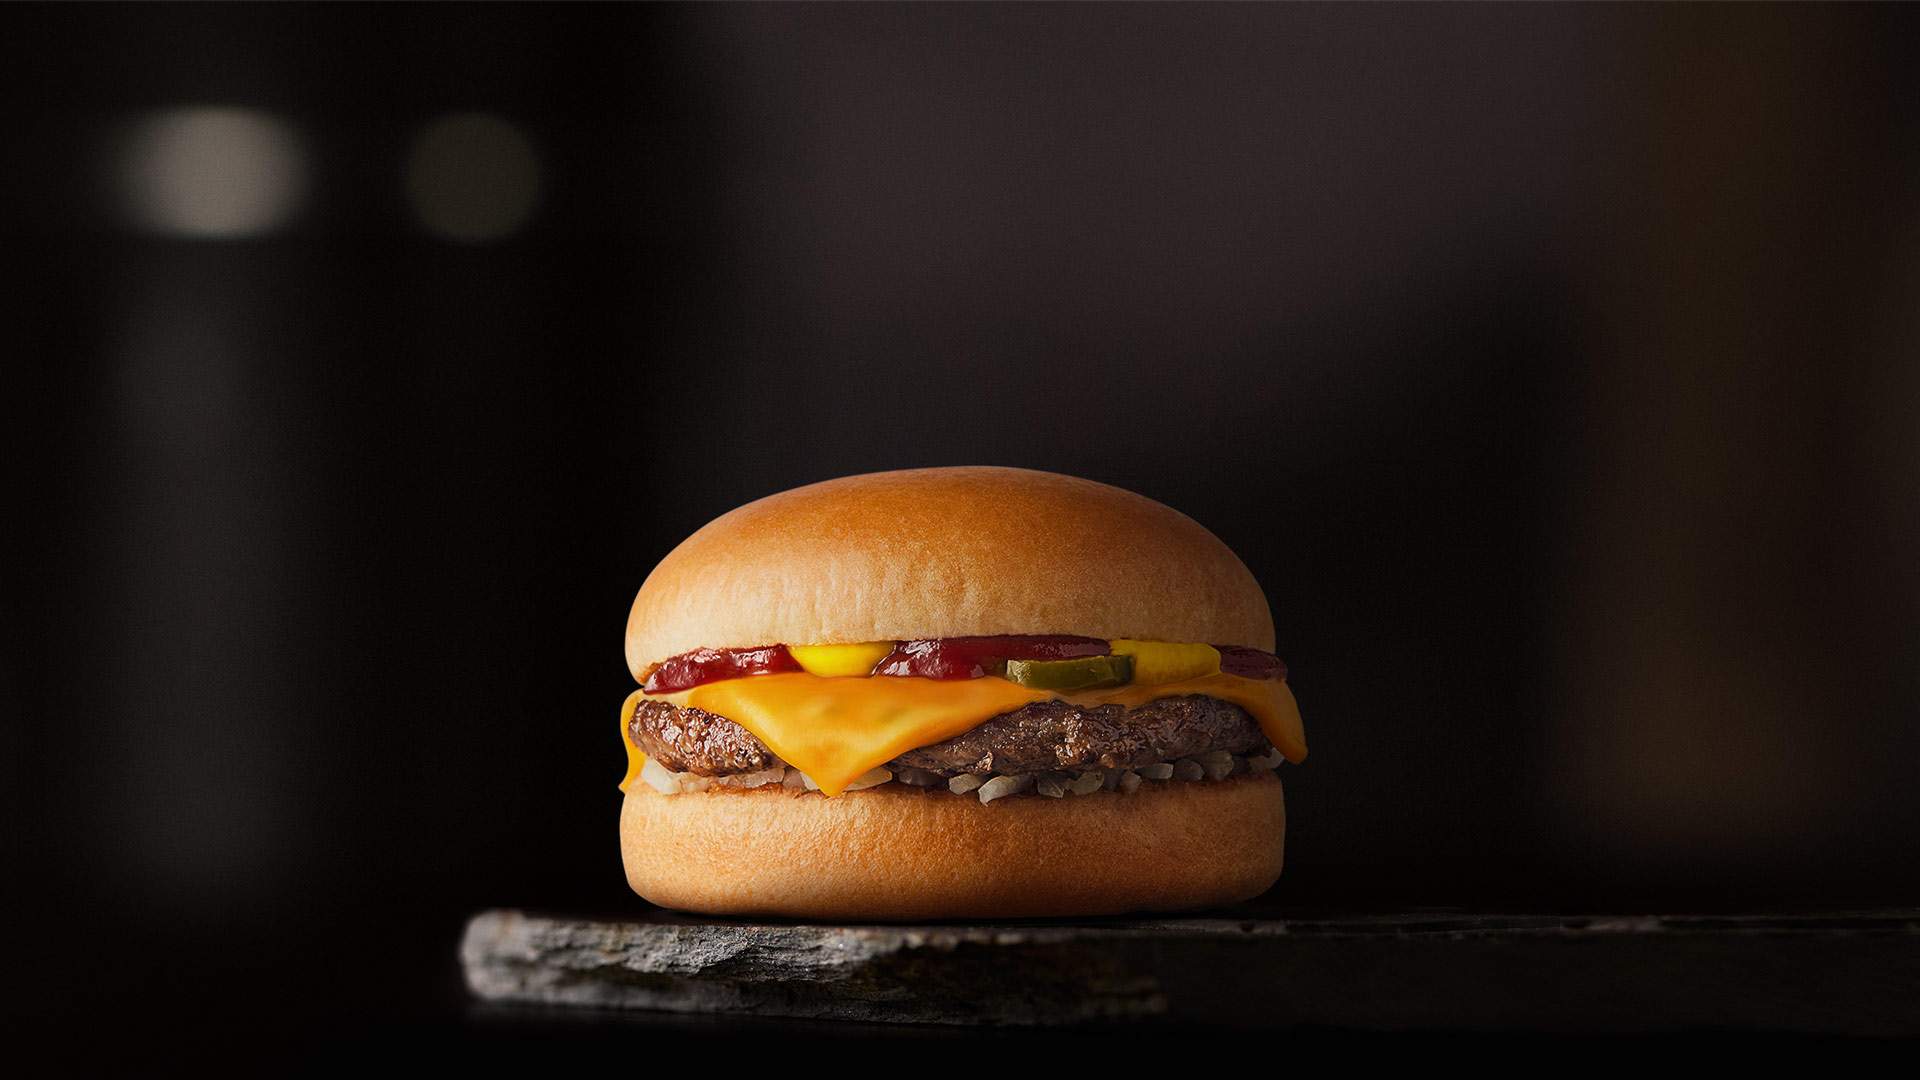 Cuantas hamburguesas vende mcdonalds por segundo